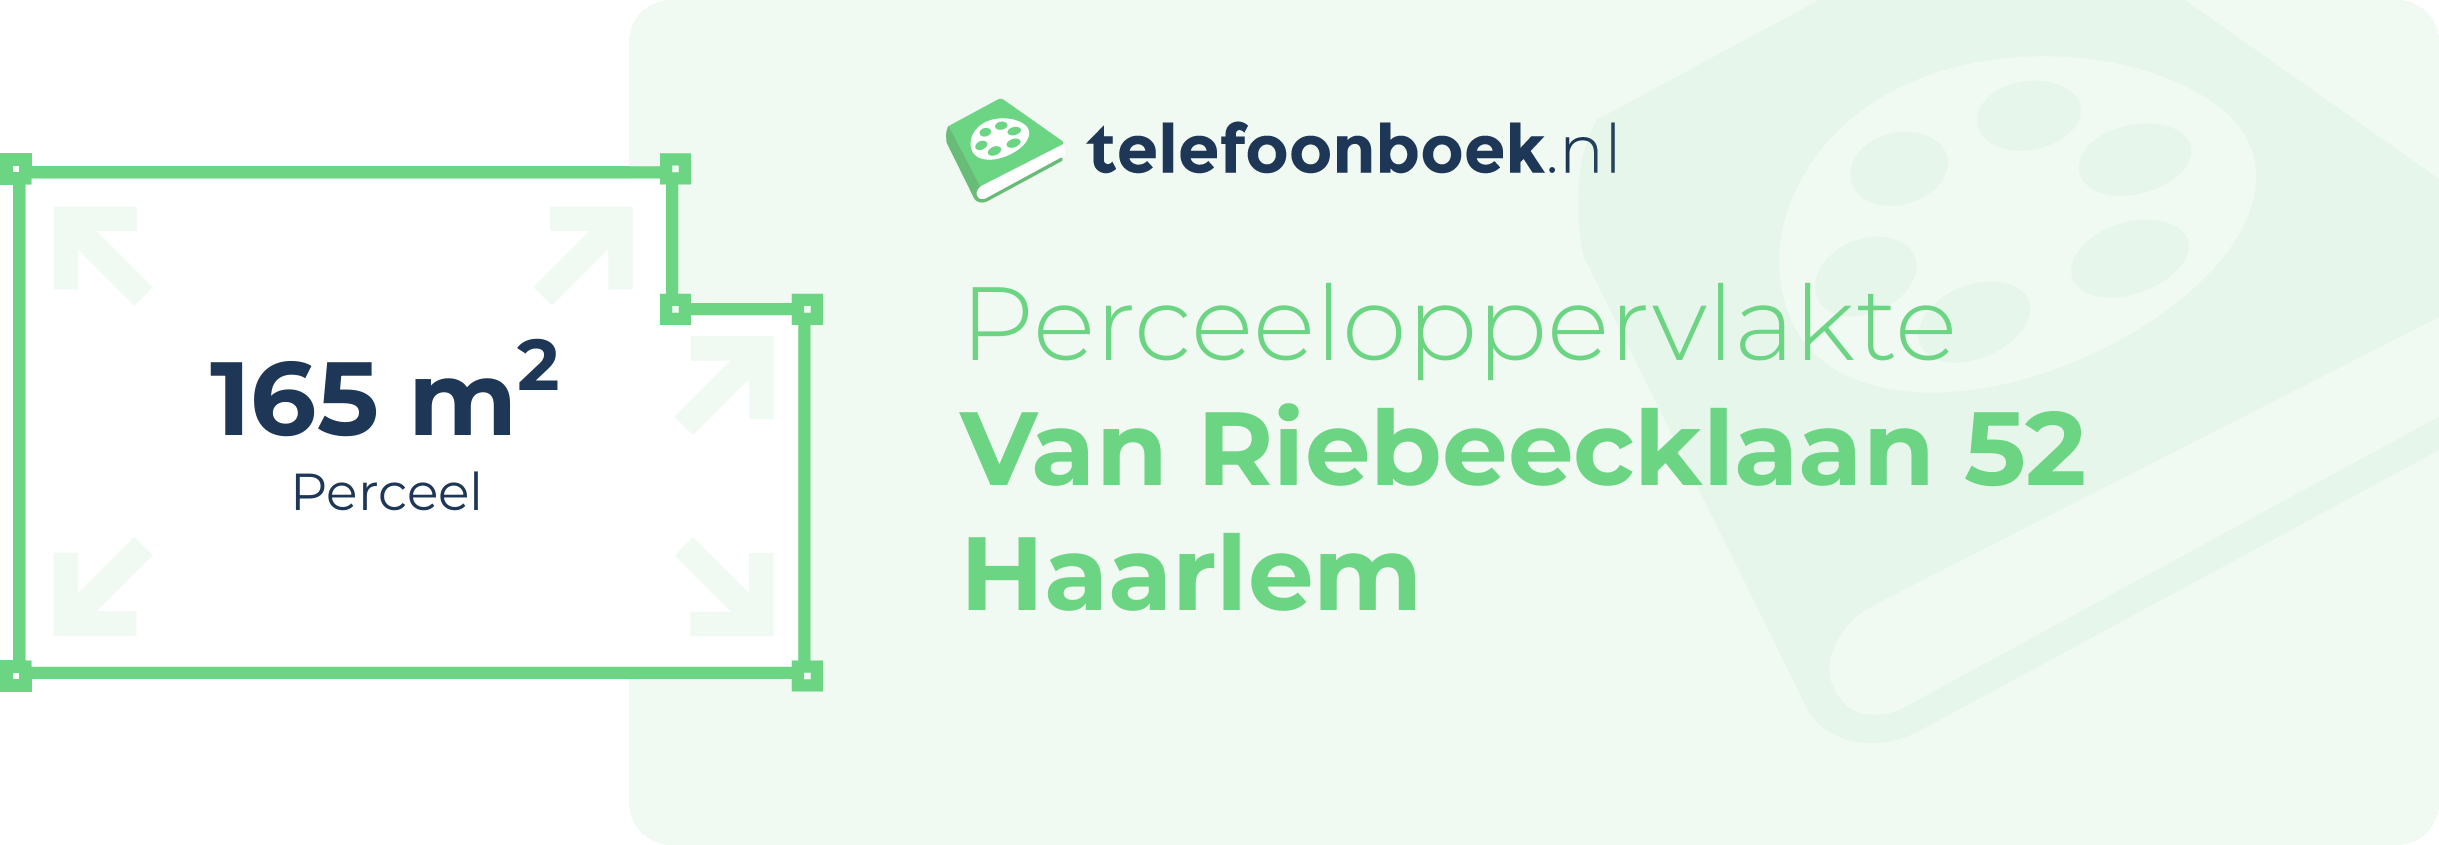 Perceeloppervlakte Van Riebeecklaan 52 Haarlem